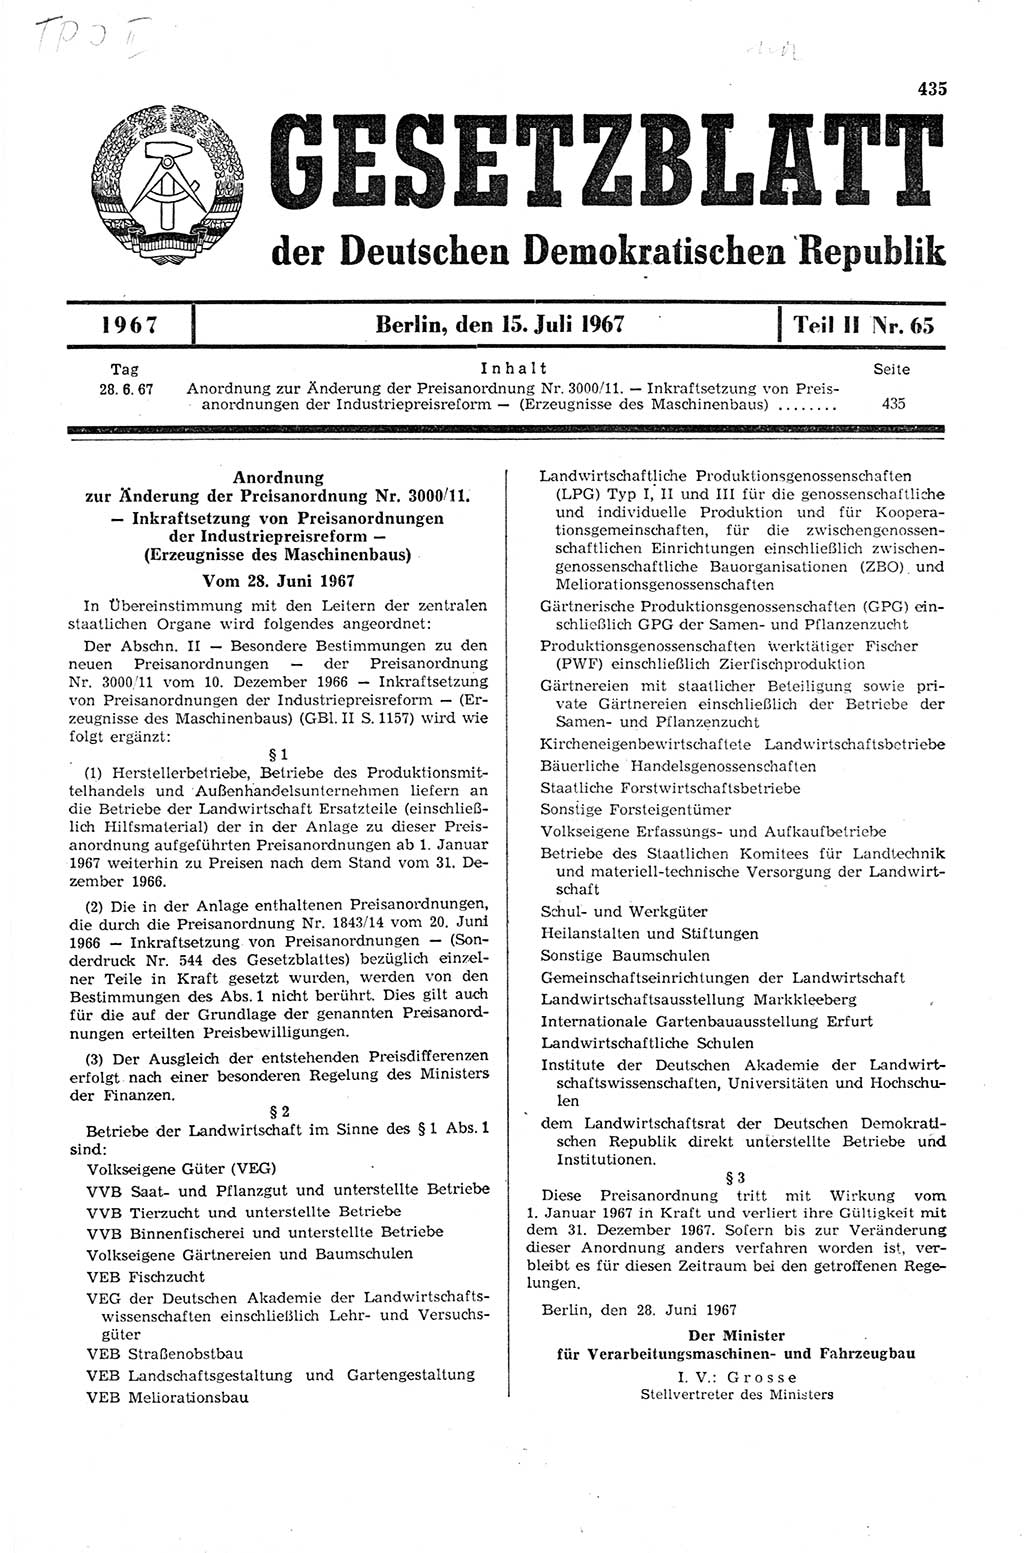 Gesetzblatt (GBl.) der Deutschen Demokratischen Republik (DDR) Teil ⅠⅠ 1967, Seite 435 (GBl. DDR ⅠⅠ 1967, S. 435)